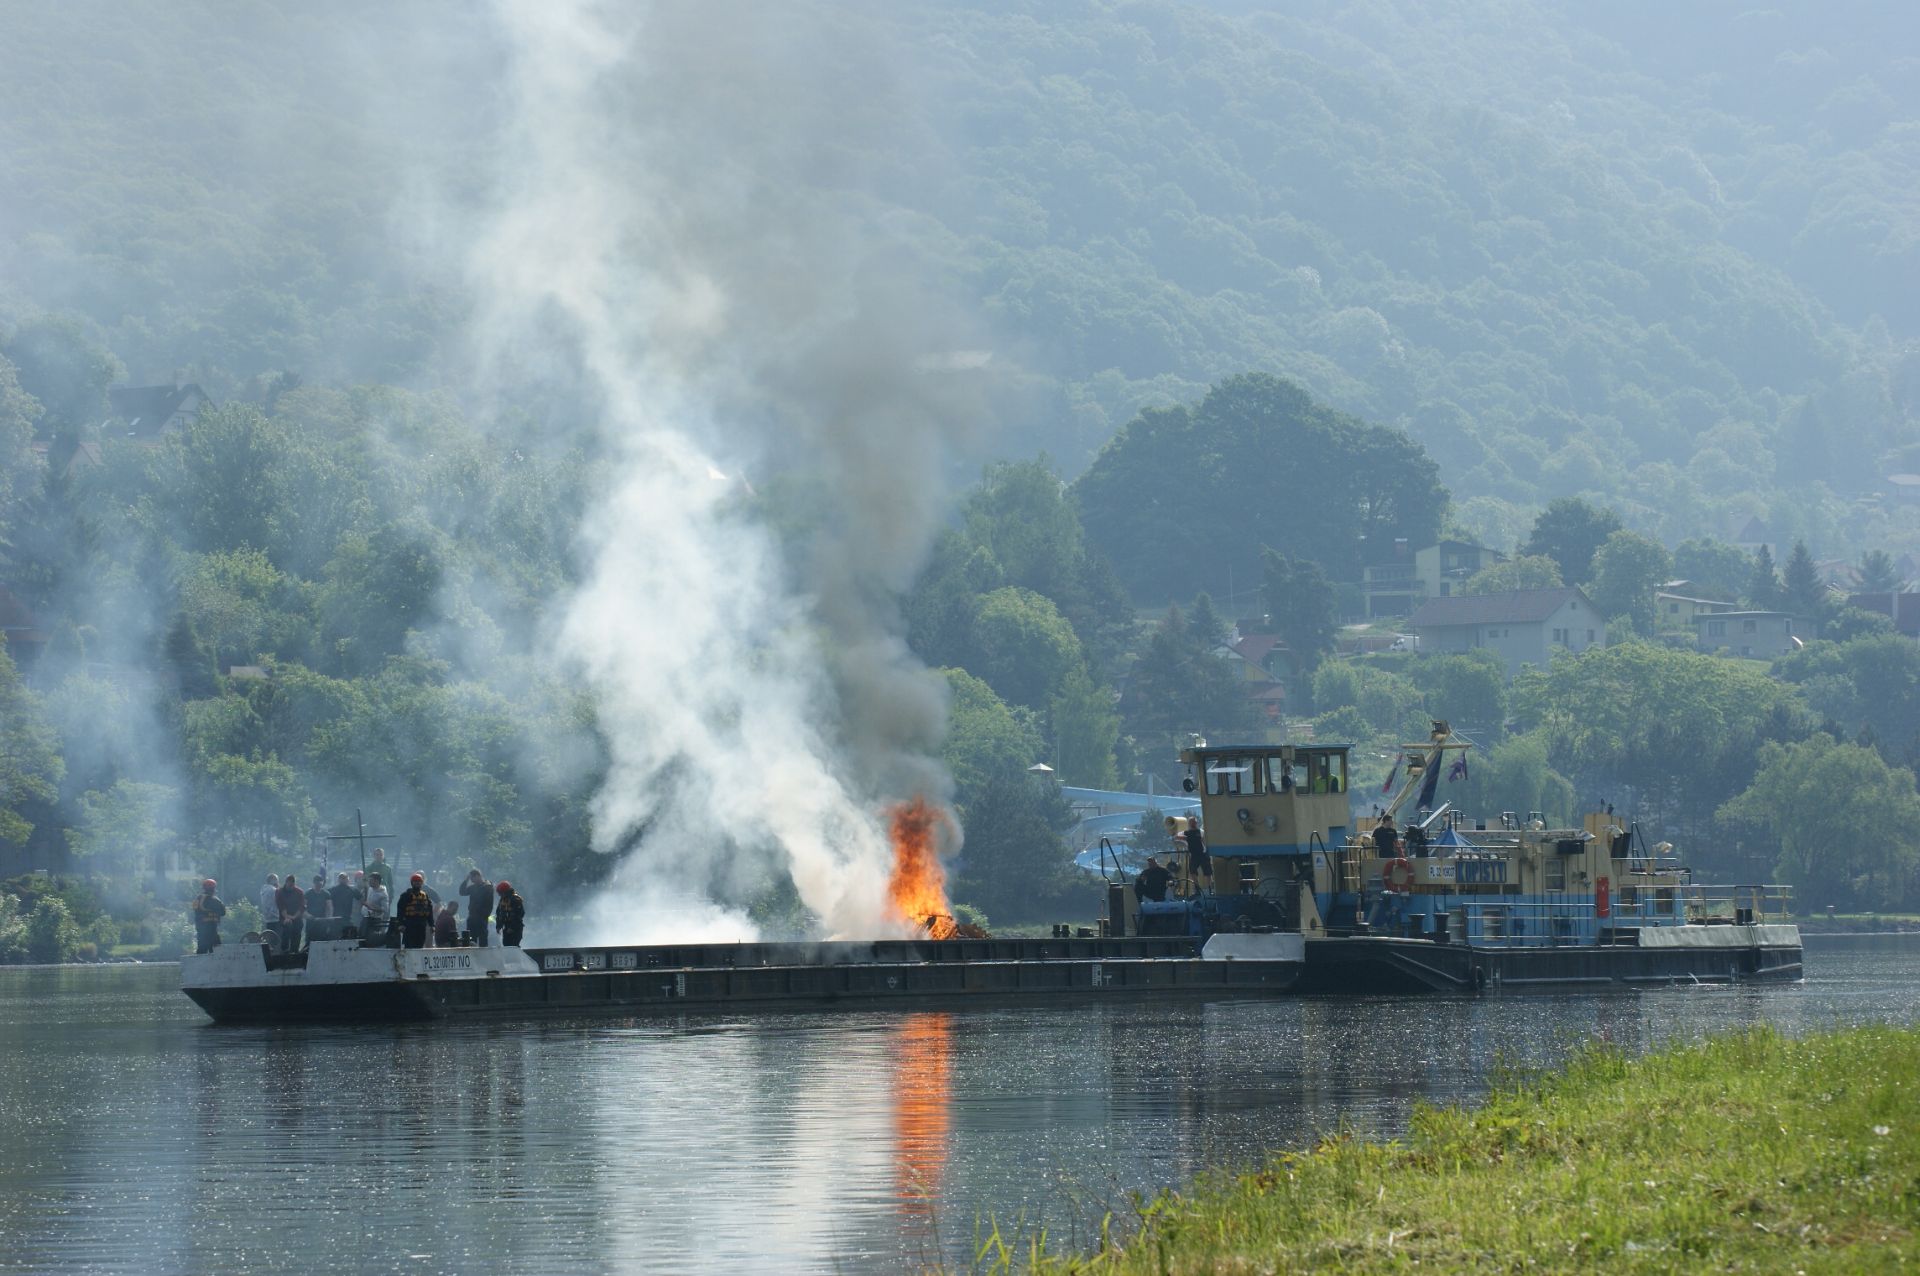 Požár nákladní lodi nelegálně převážející uprchlíky. Foto: HZS/Lukáš Marvan